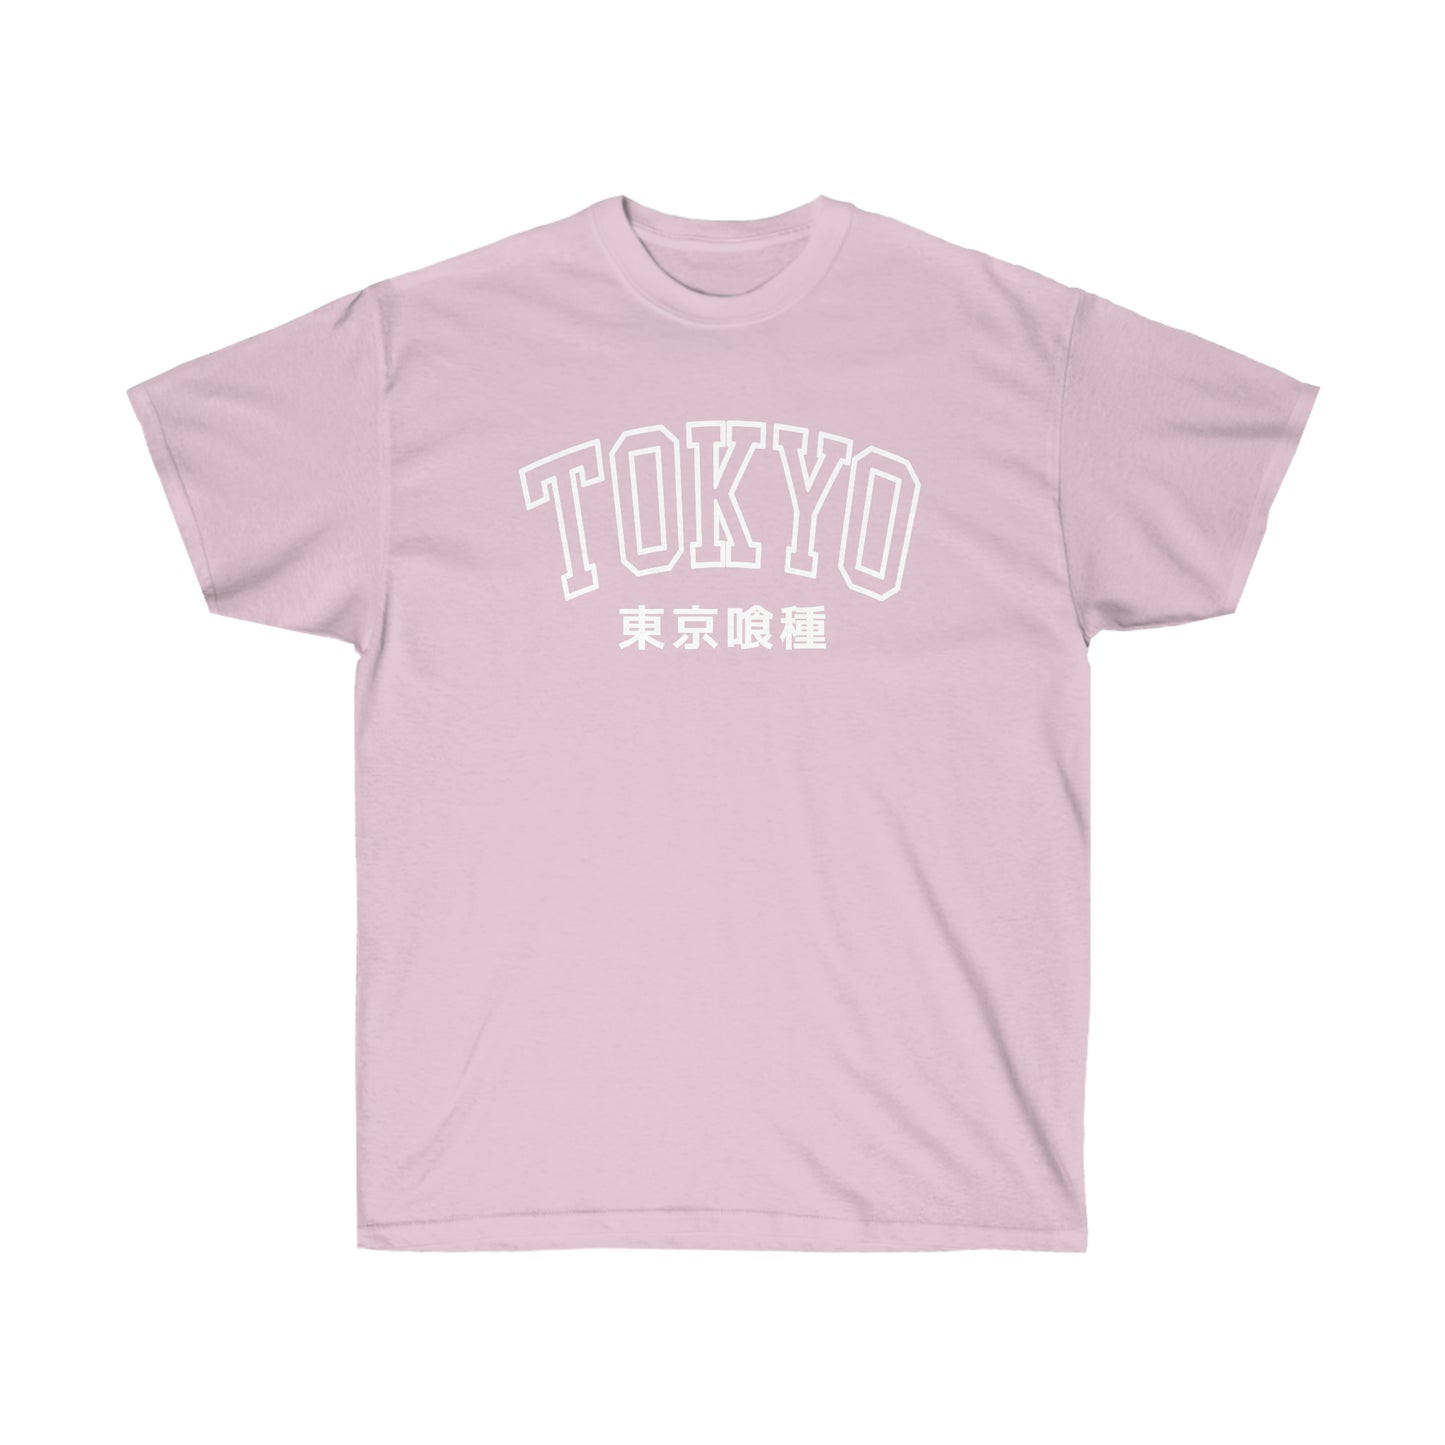 Tokyo Goul shirt Kamii University Anteiku Cafe Kanekis Kens shirt